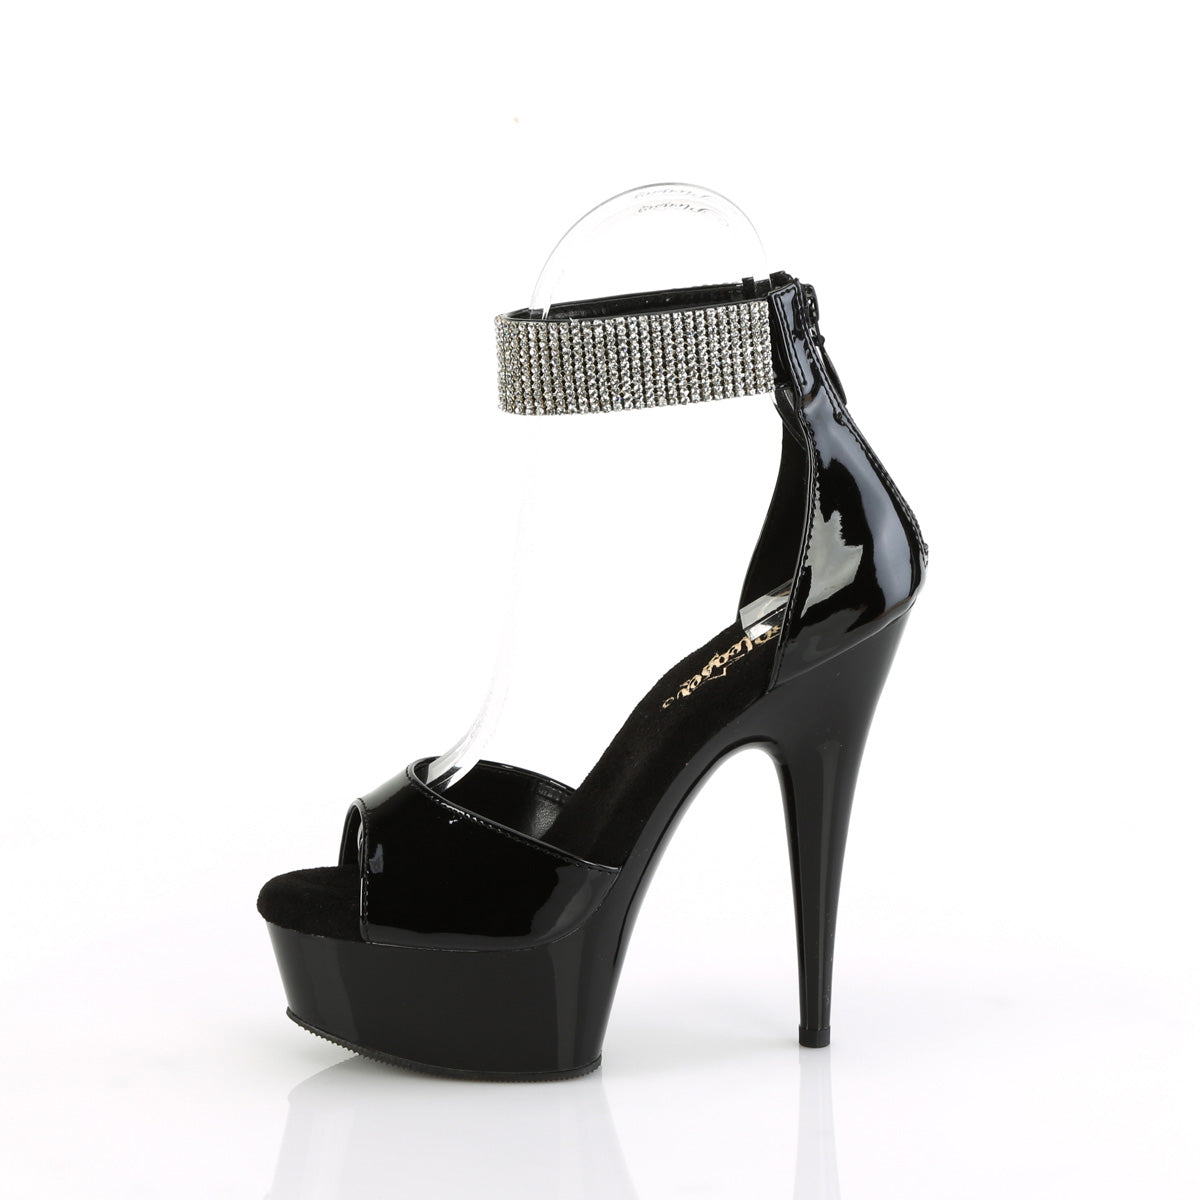 DELIGHT-625 Pleaser Black Patent Platform Shoes [Exotic Dance Shoes]